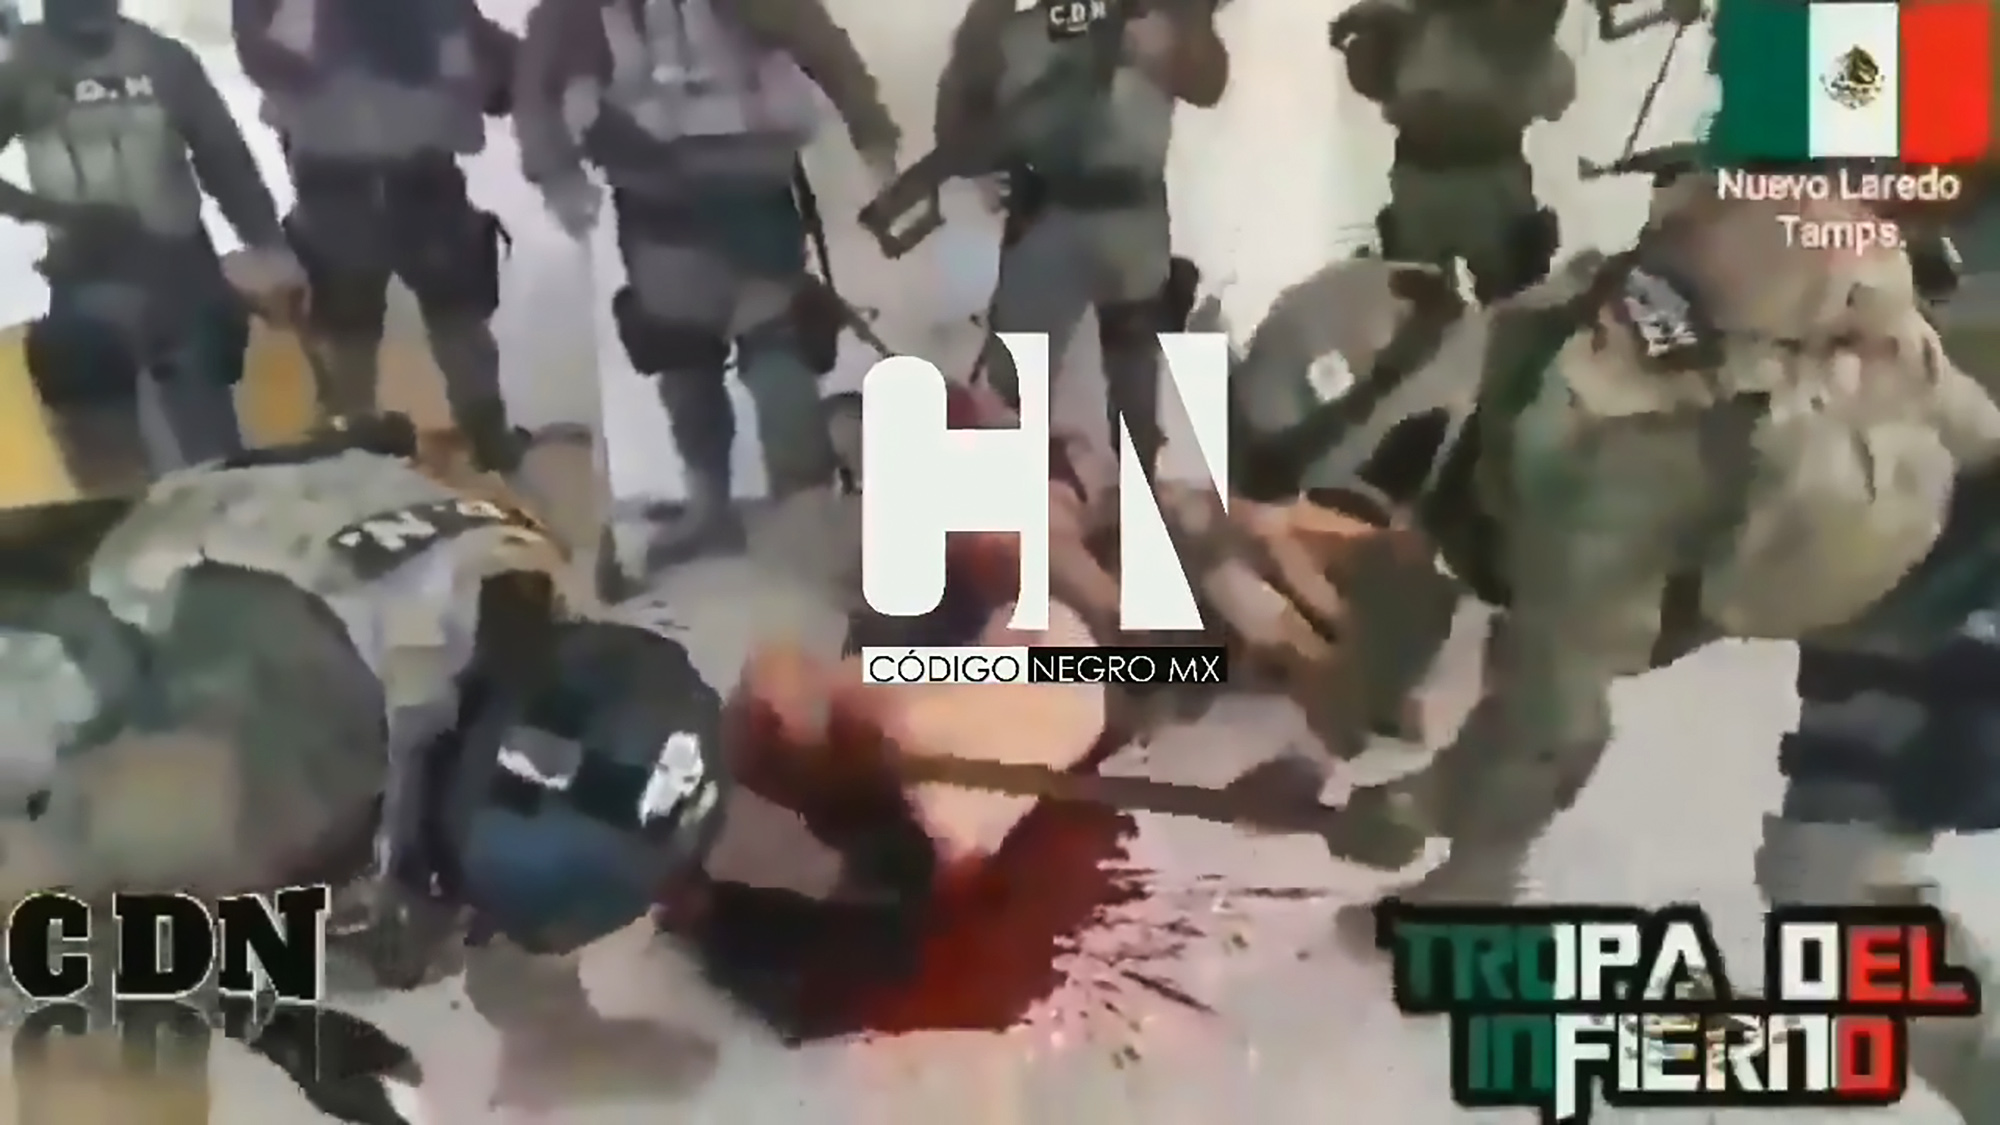 Los zetas beheading 🔥 Graphic Photos: Los Zetas Cartel Civil